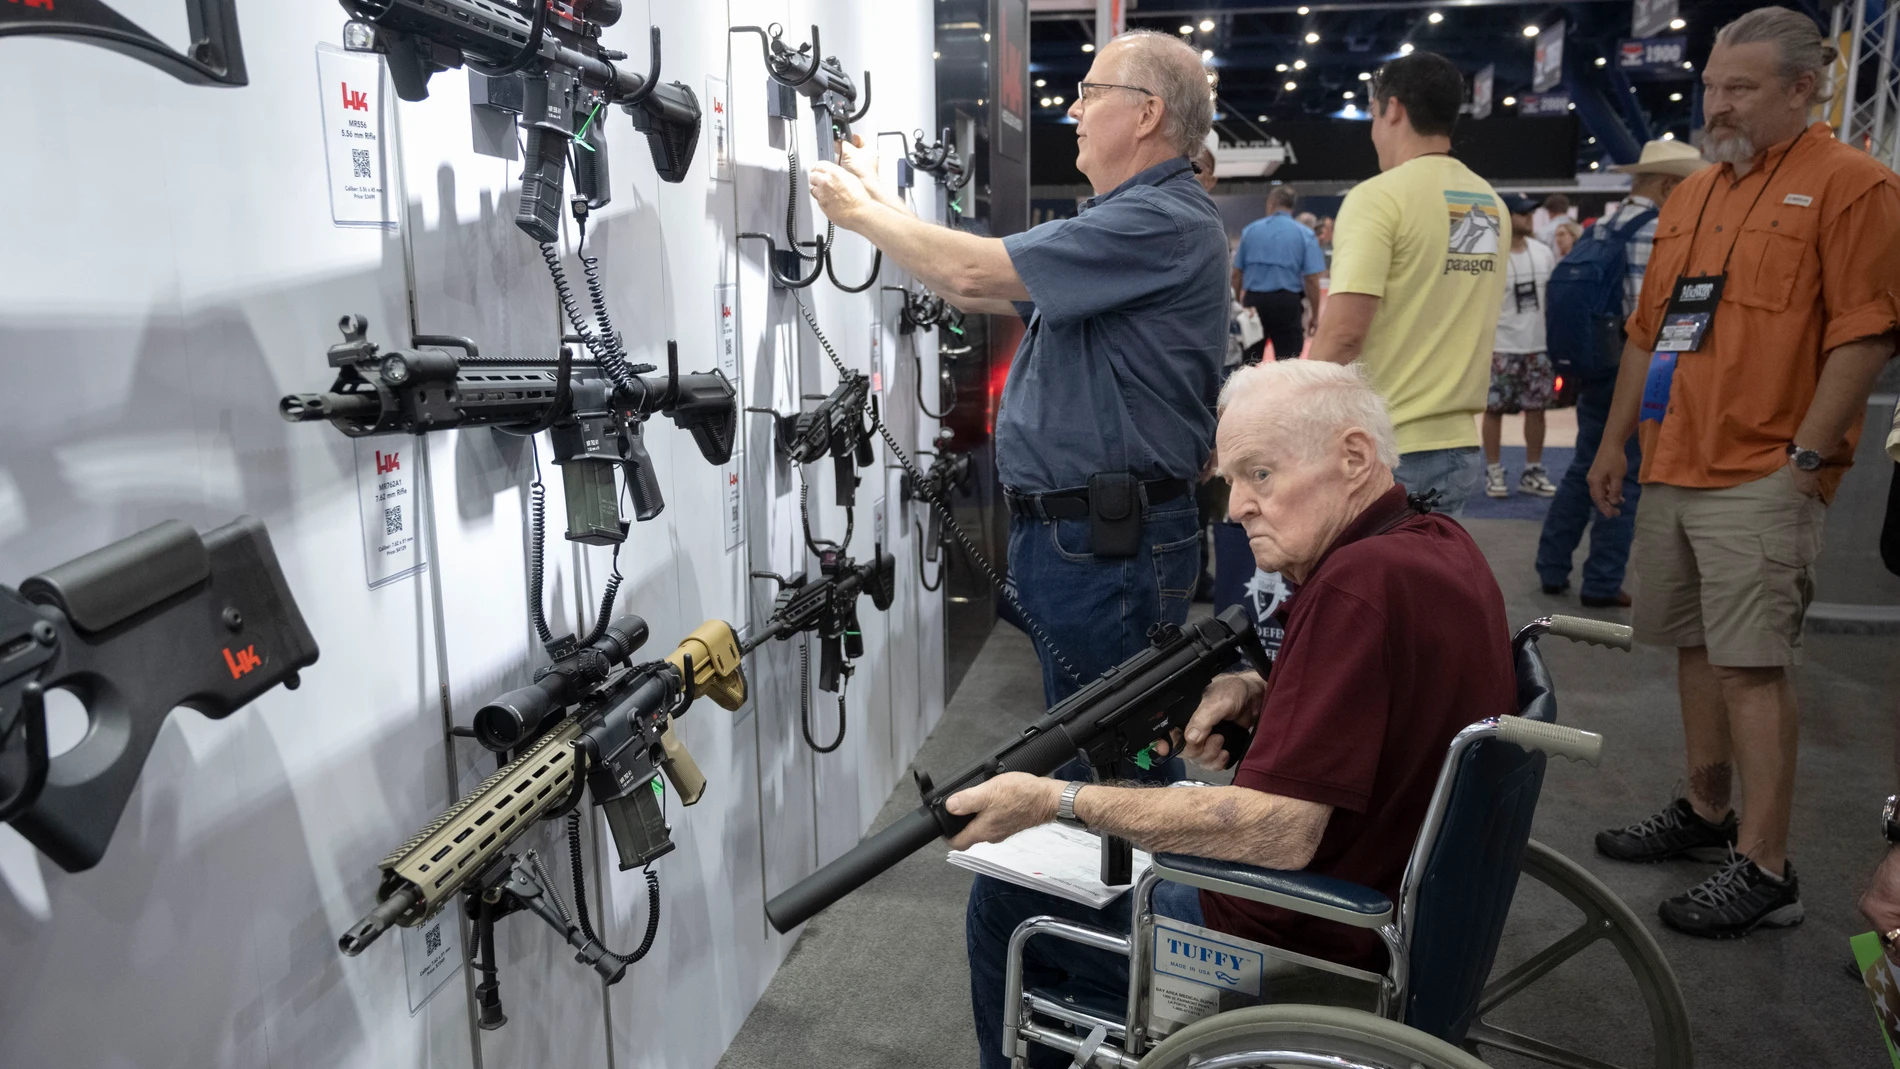 Gente inspeccionando rifles